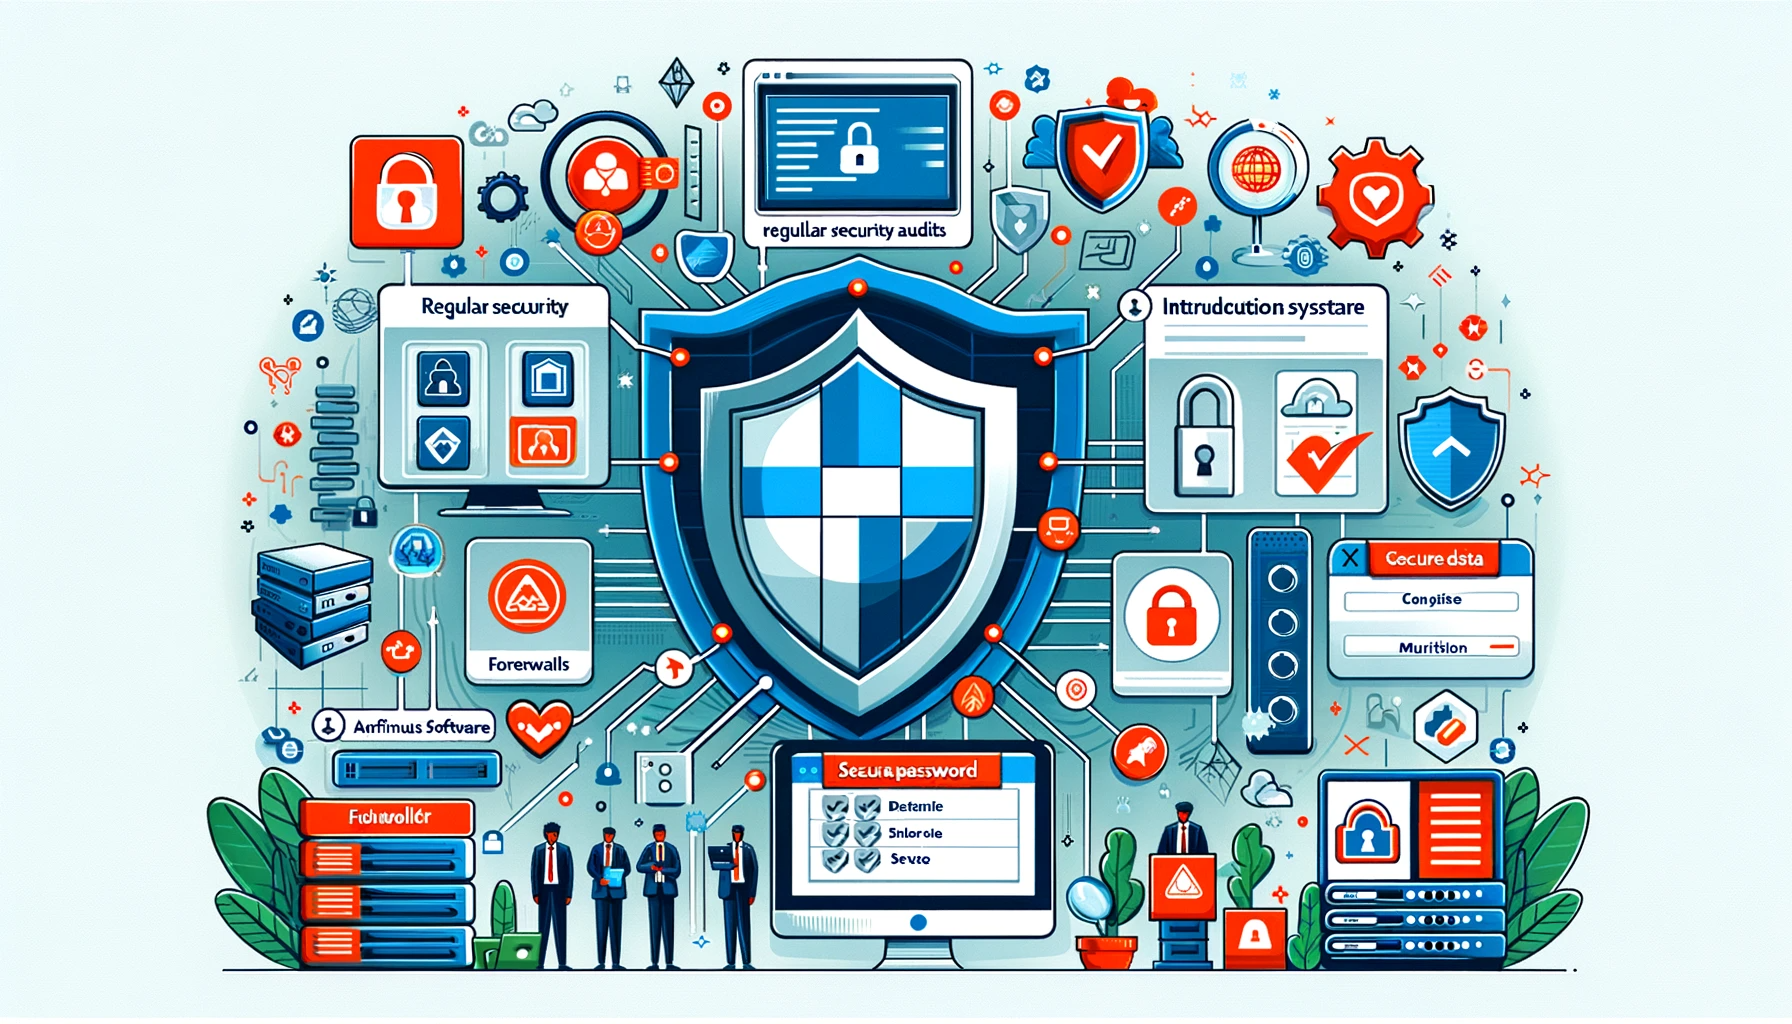 홈페이지 유지보수 주요 업무 7가지 - 4. 해킹 시도 방지 위한 보안 조치